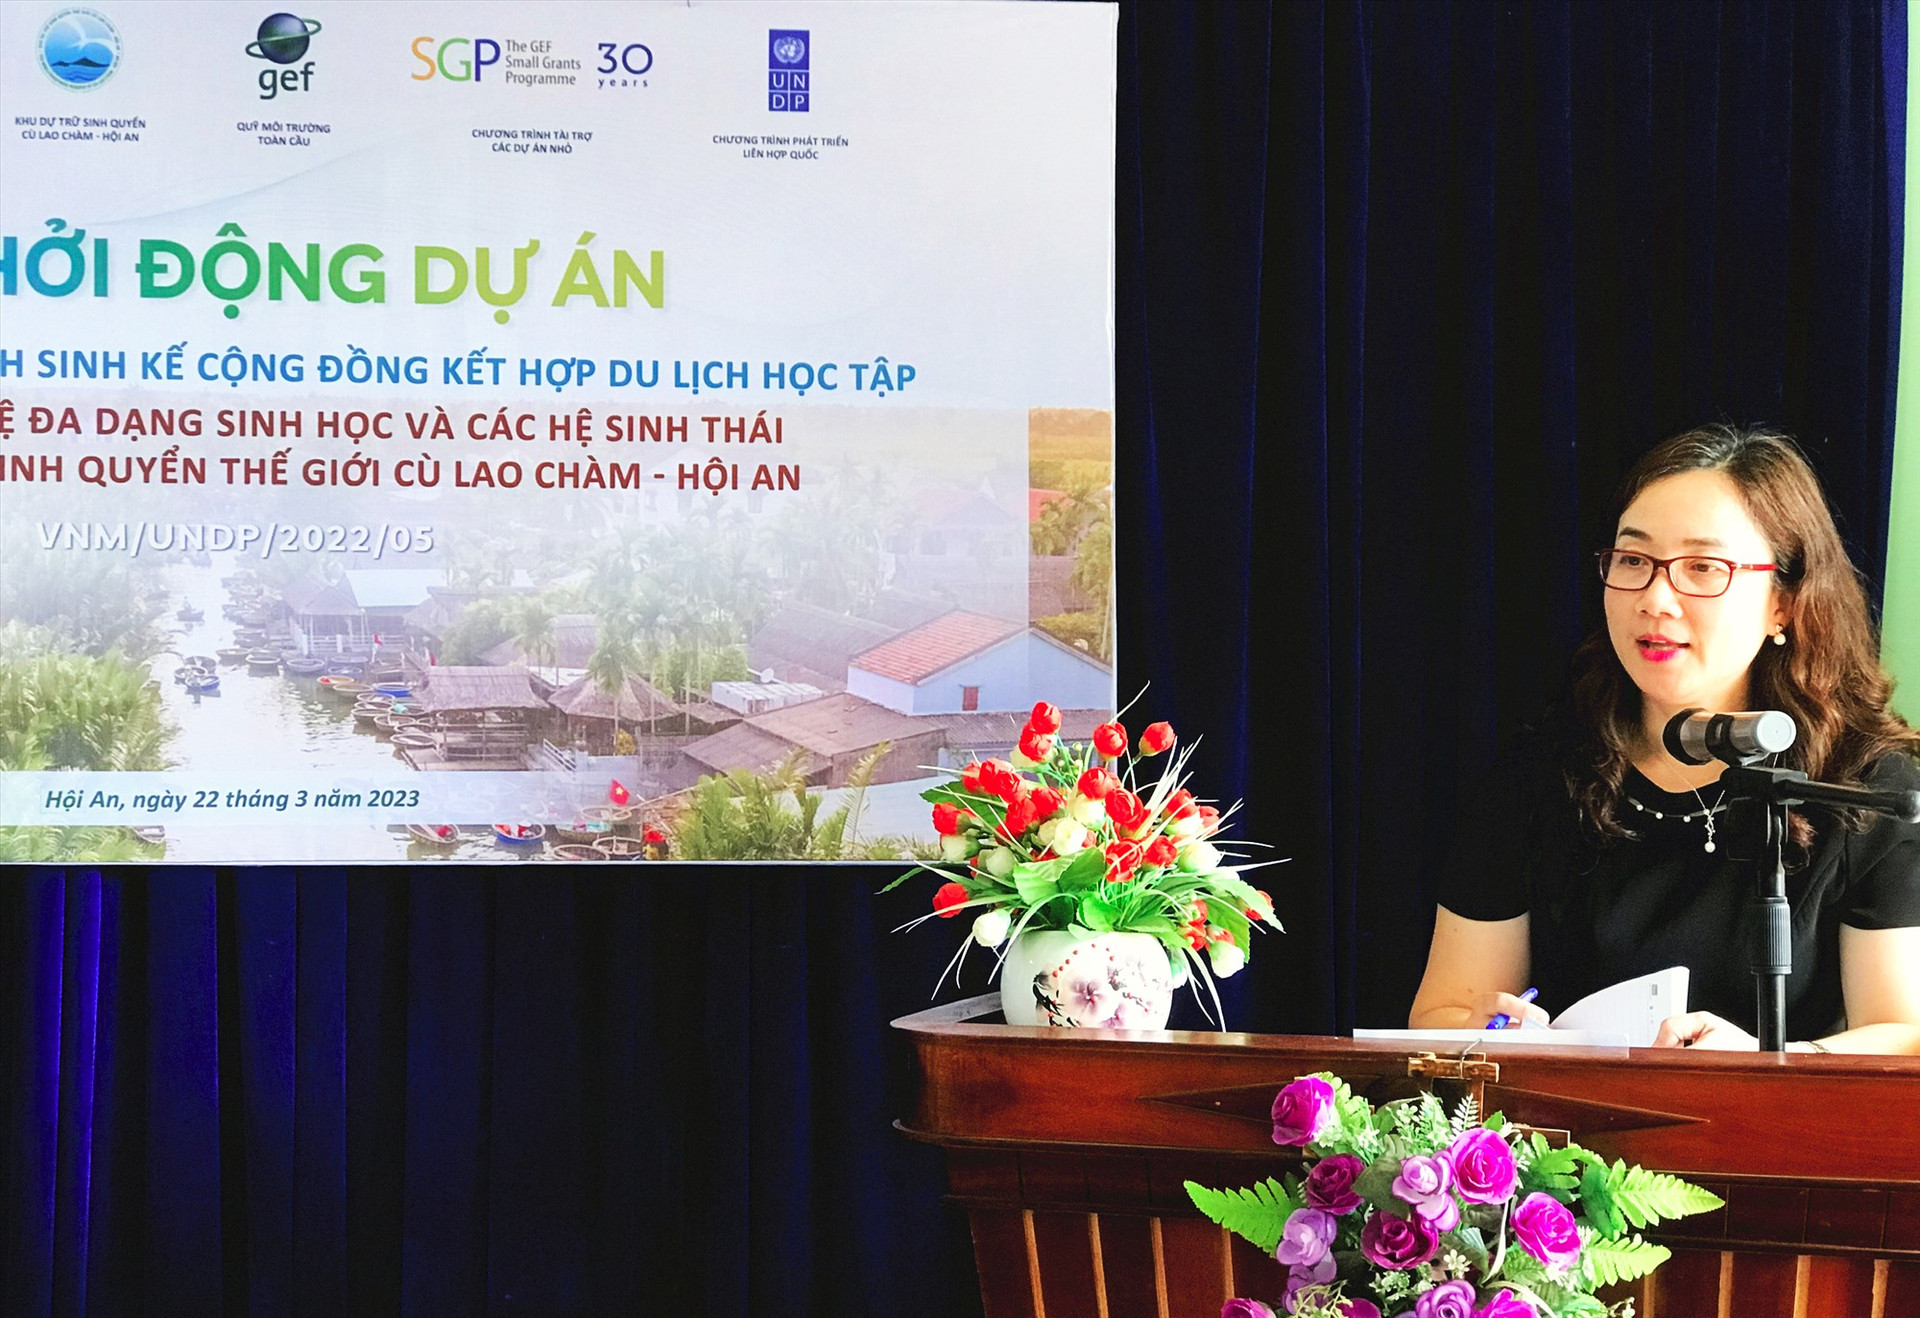 Bà Nguyễn Thị Thu Huyền - Điều phối viên Quốc gia Chương trình tài trợ các dự án nhỏ tại Việt Nam - Quỹ môi trường toàn cầu tại buổi lễ. Ảnh: Minh Quân